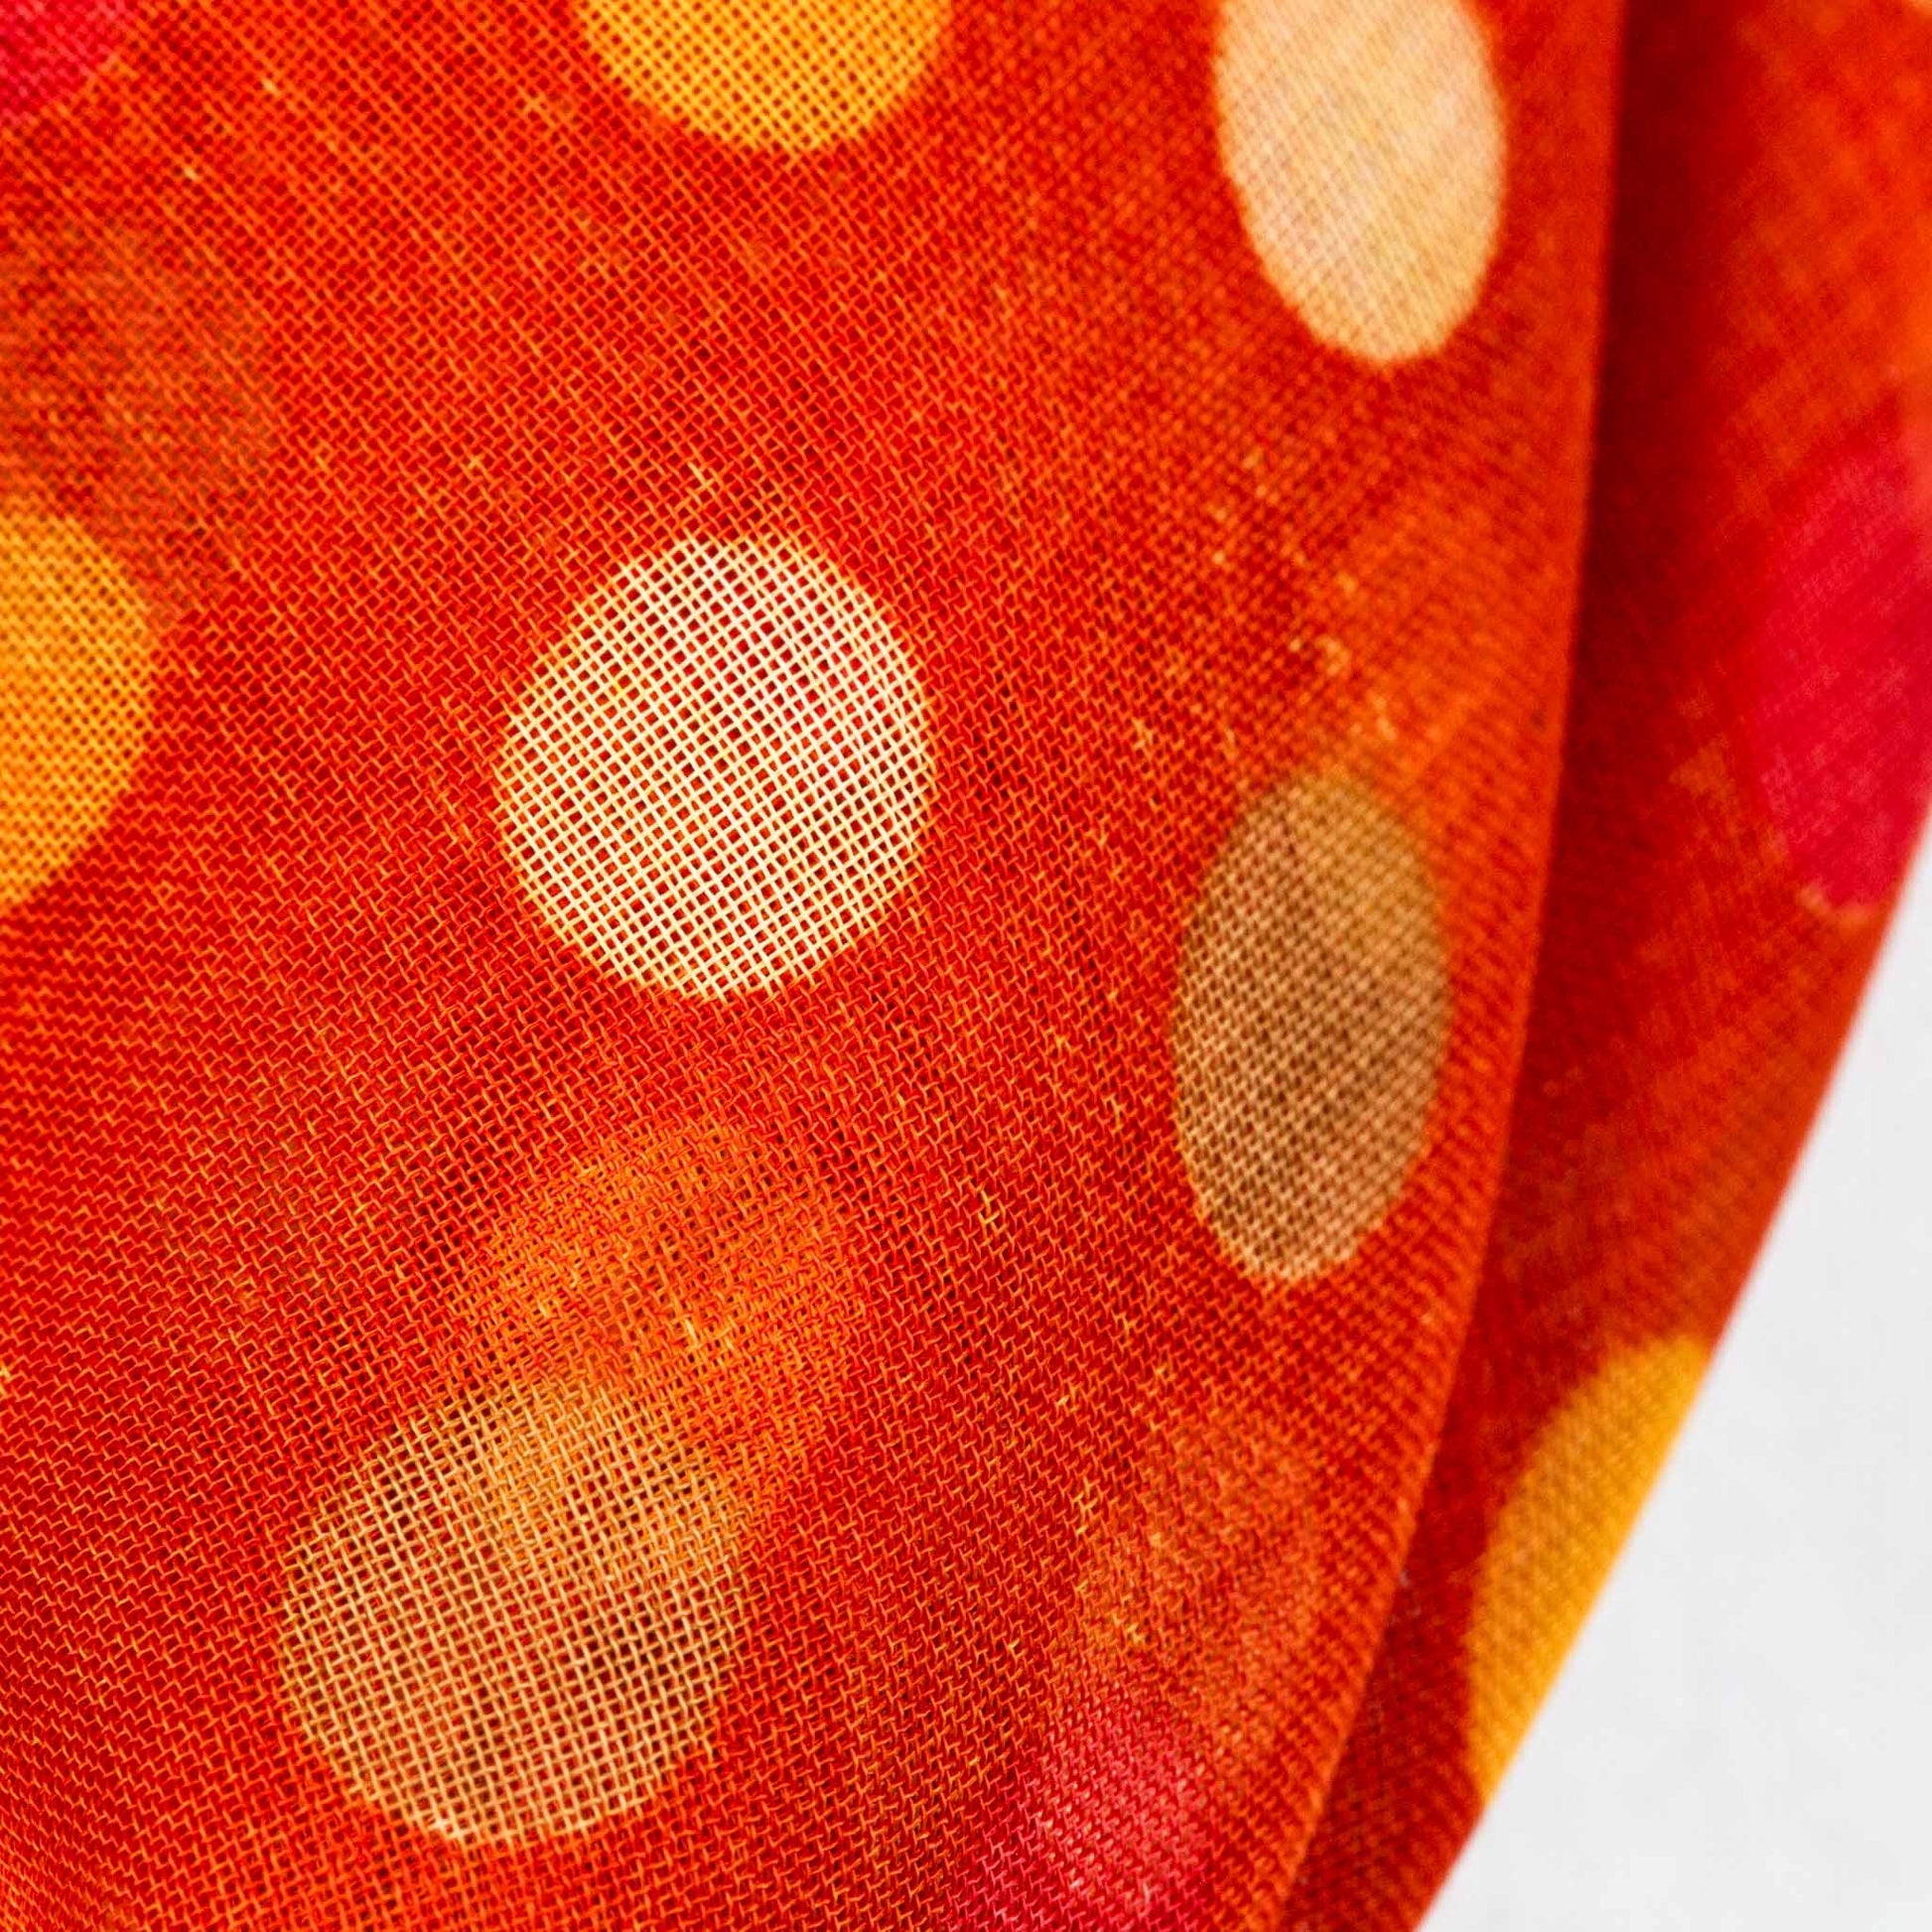 Eșarfă damă din mătase , imprimeu cu flori și buline, 65 x 65 cm - Portocaliu